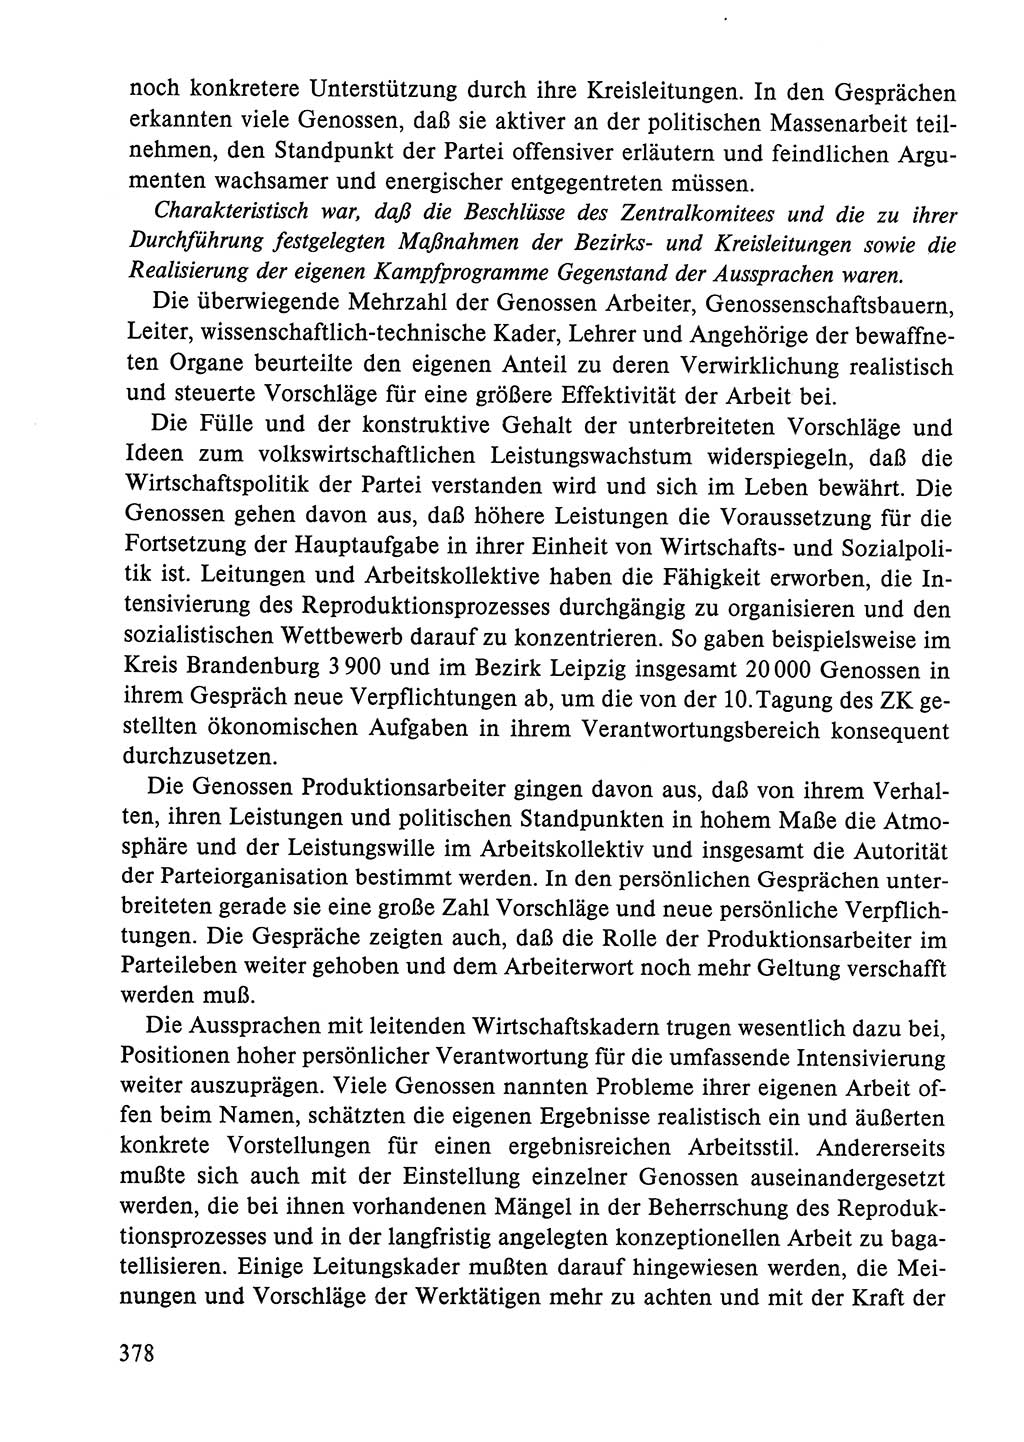 Dokumente der Sozialistischen Einheitspartei Deutschlands (SED) [Deutsche Demokratische Republik (DDR)] 1984-1985, Seite 378 (Dok. SED DDR 1984-1985, S. 378)